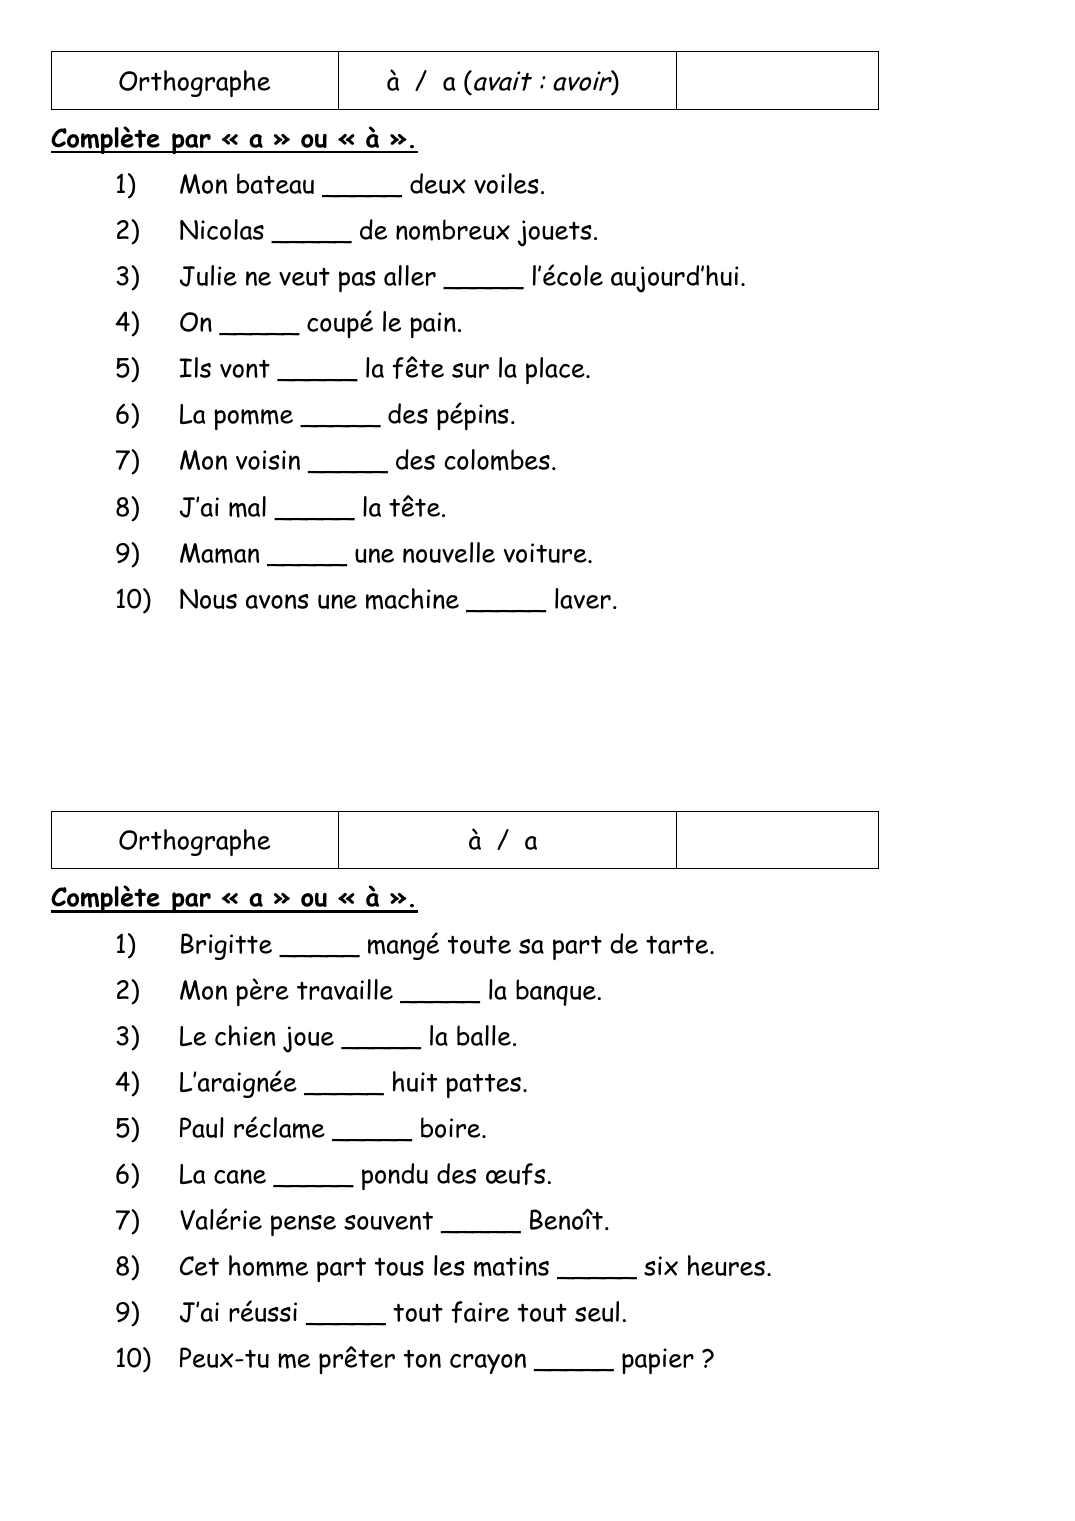 Prévisualisation du document Orthographeà / a (avait : avoir)Complète par « a » ou « à ».